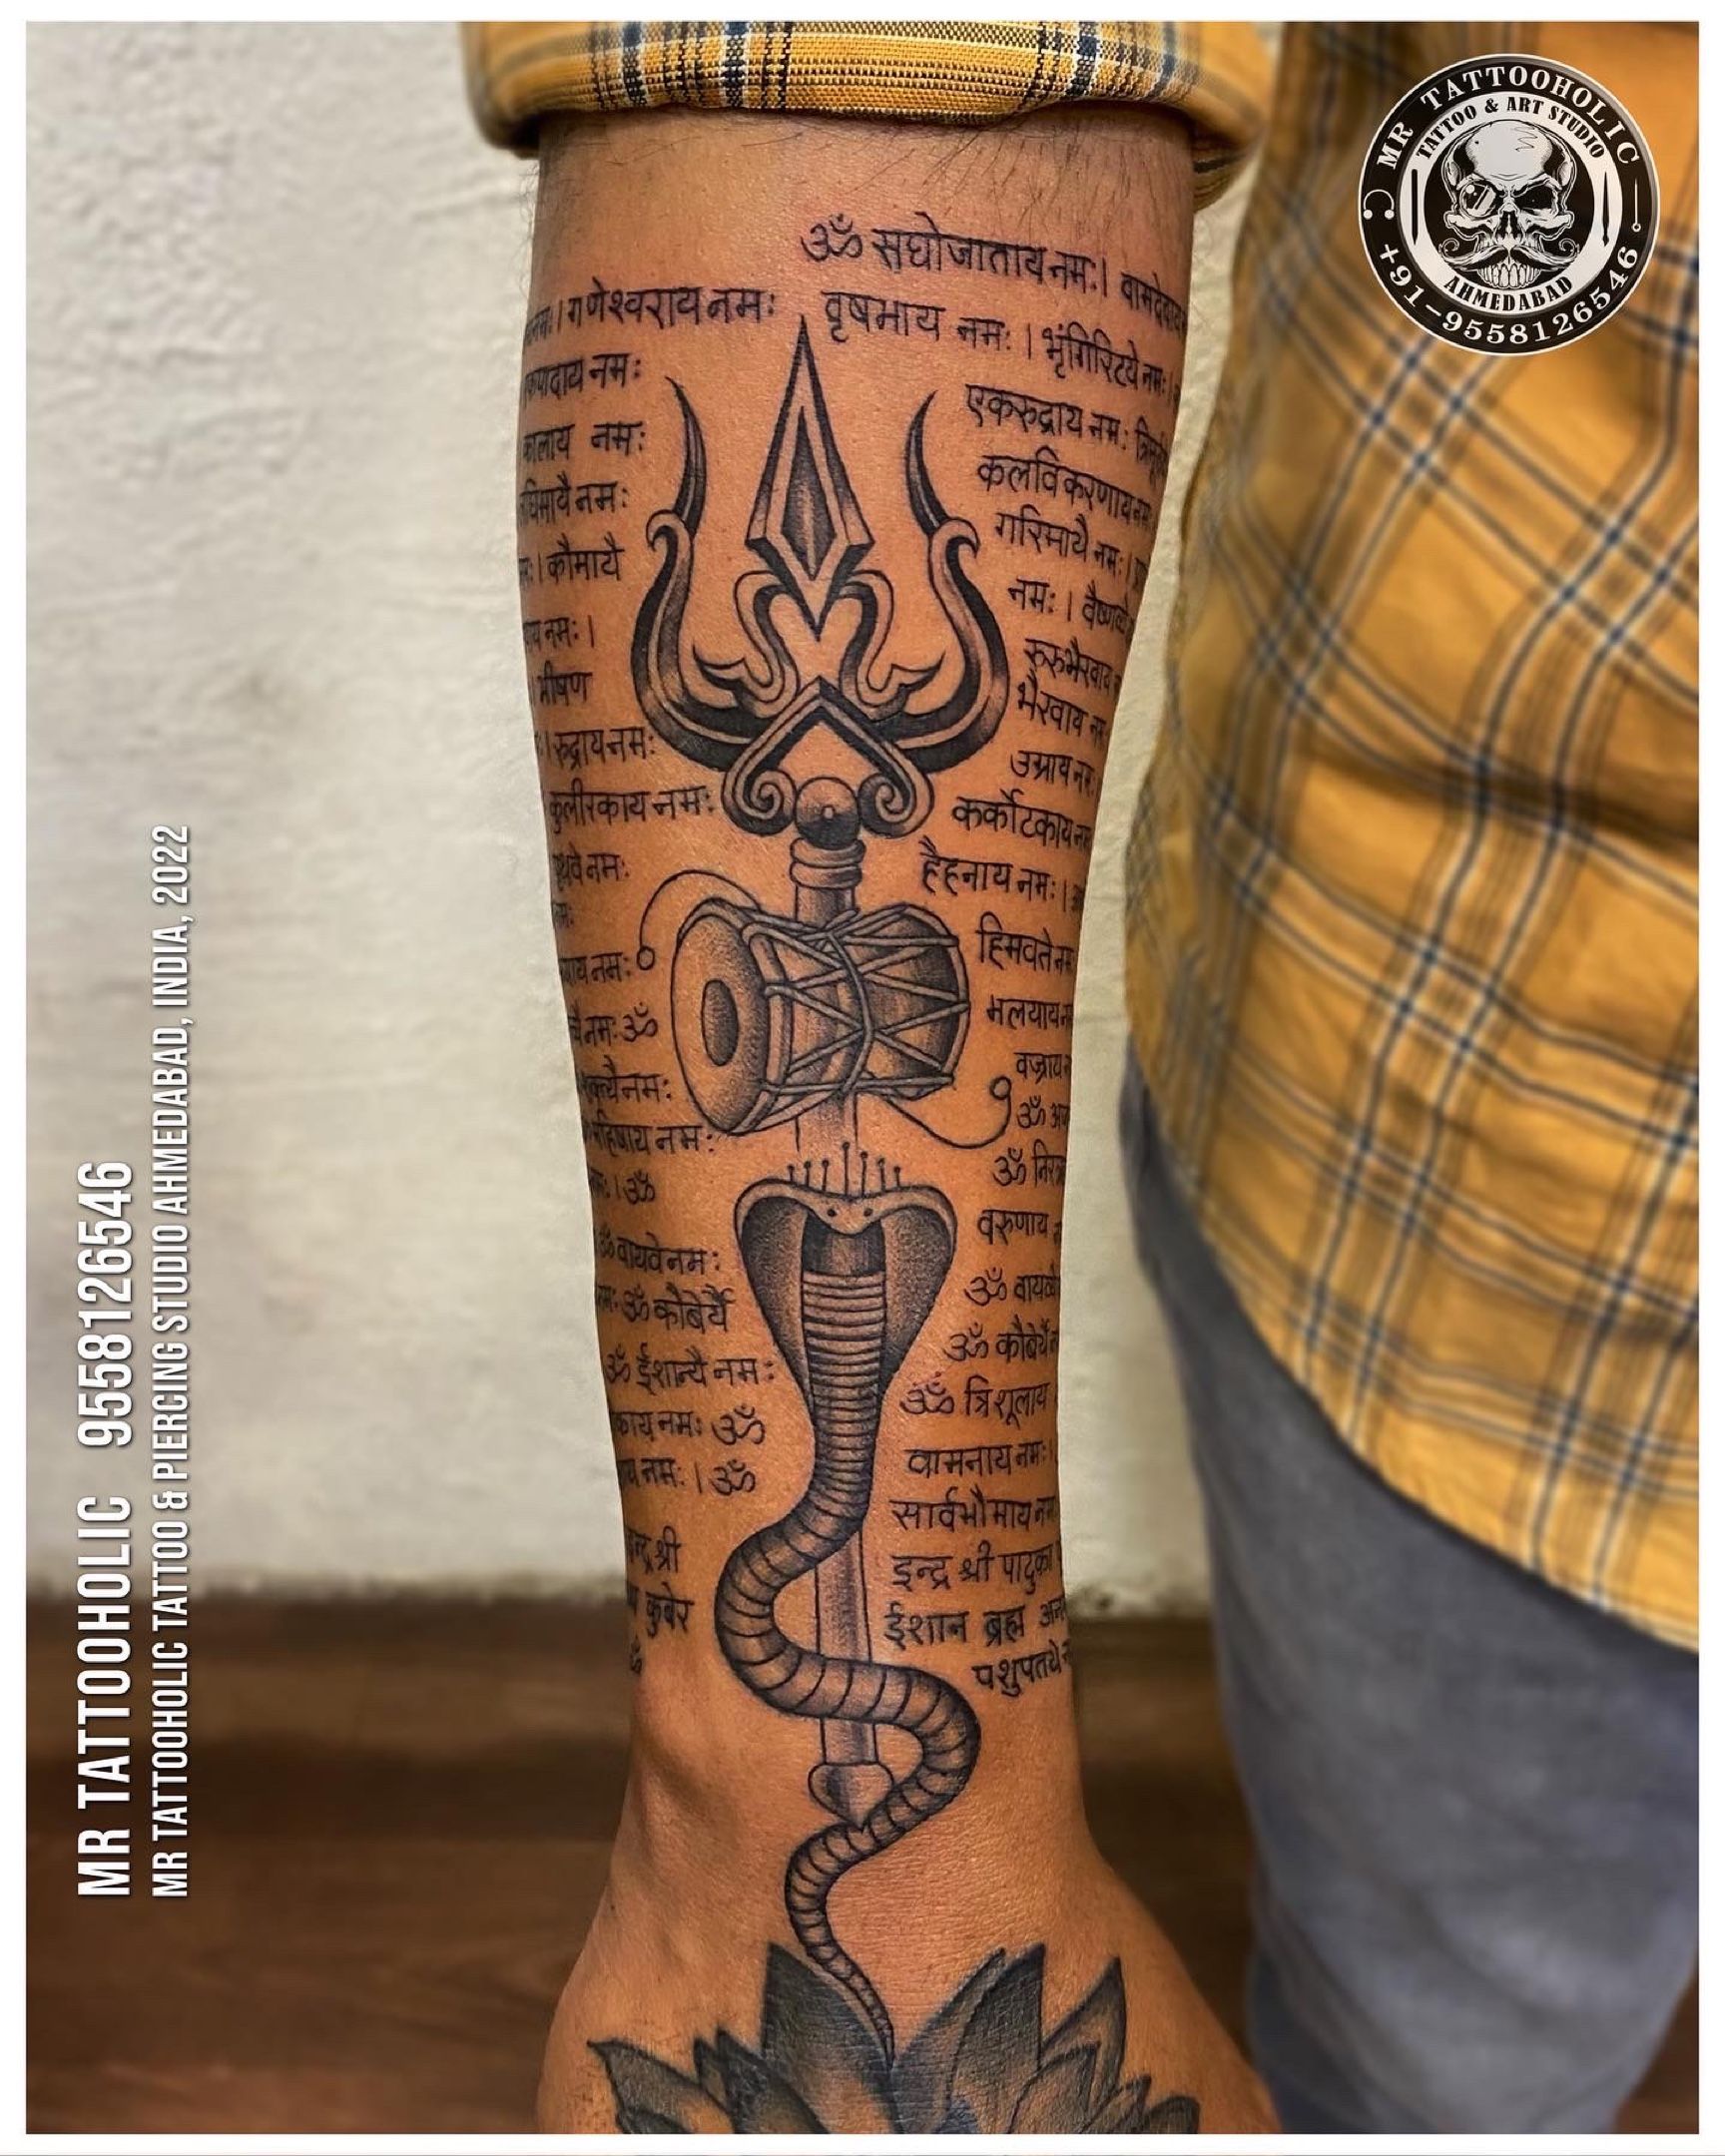 Trishul tattoo with Damru Divine Tattoo Rajkot  8153995995     moj  rajkot tattoo explore reels artist tattoos tattooart  Instagram